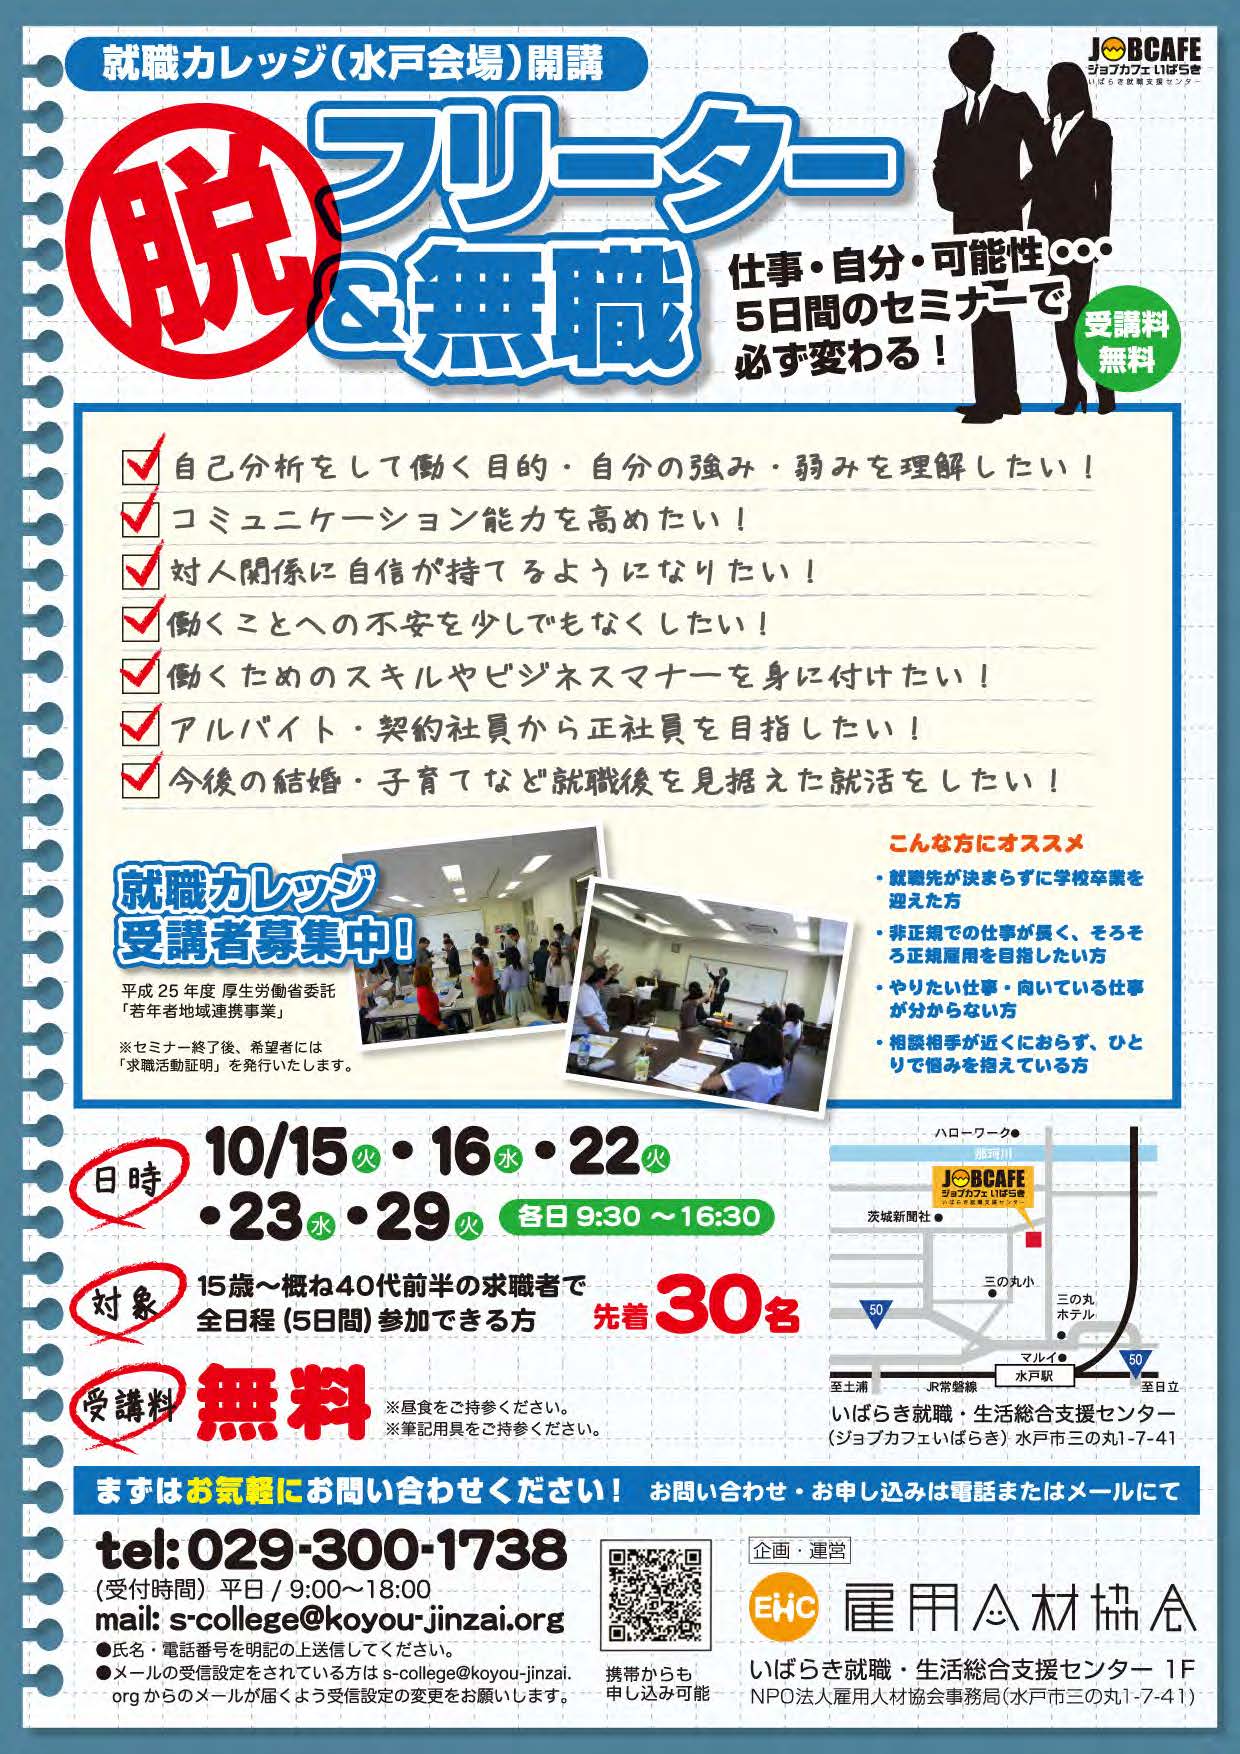 http://koyou-jinzai.org/res/images/scollege201310-1.jpg